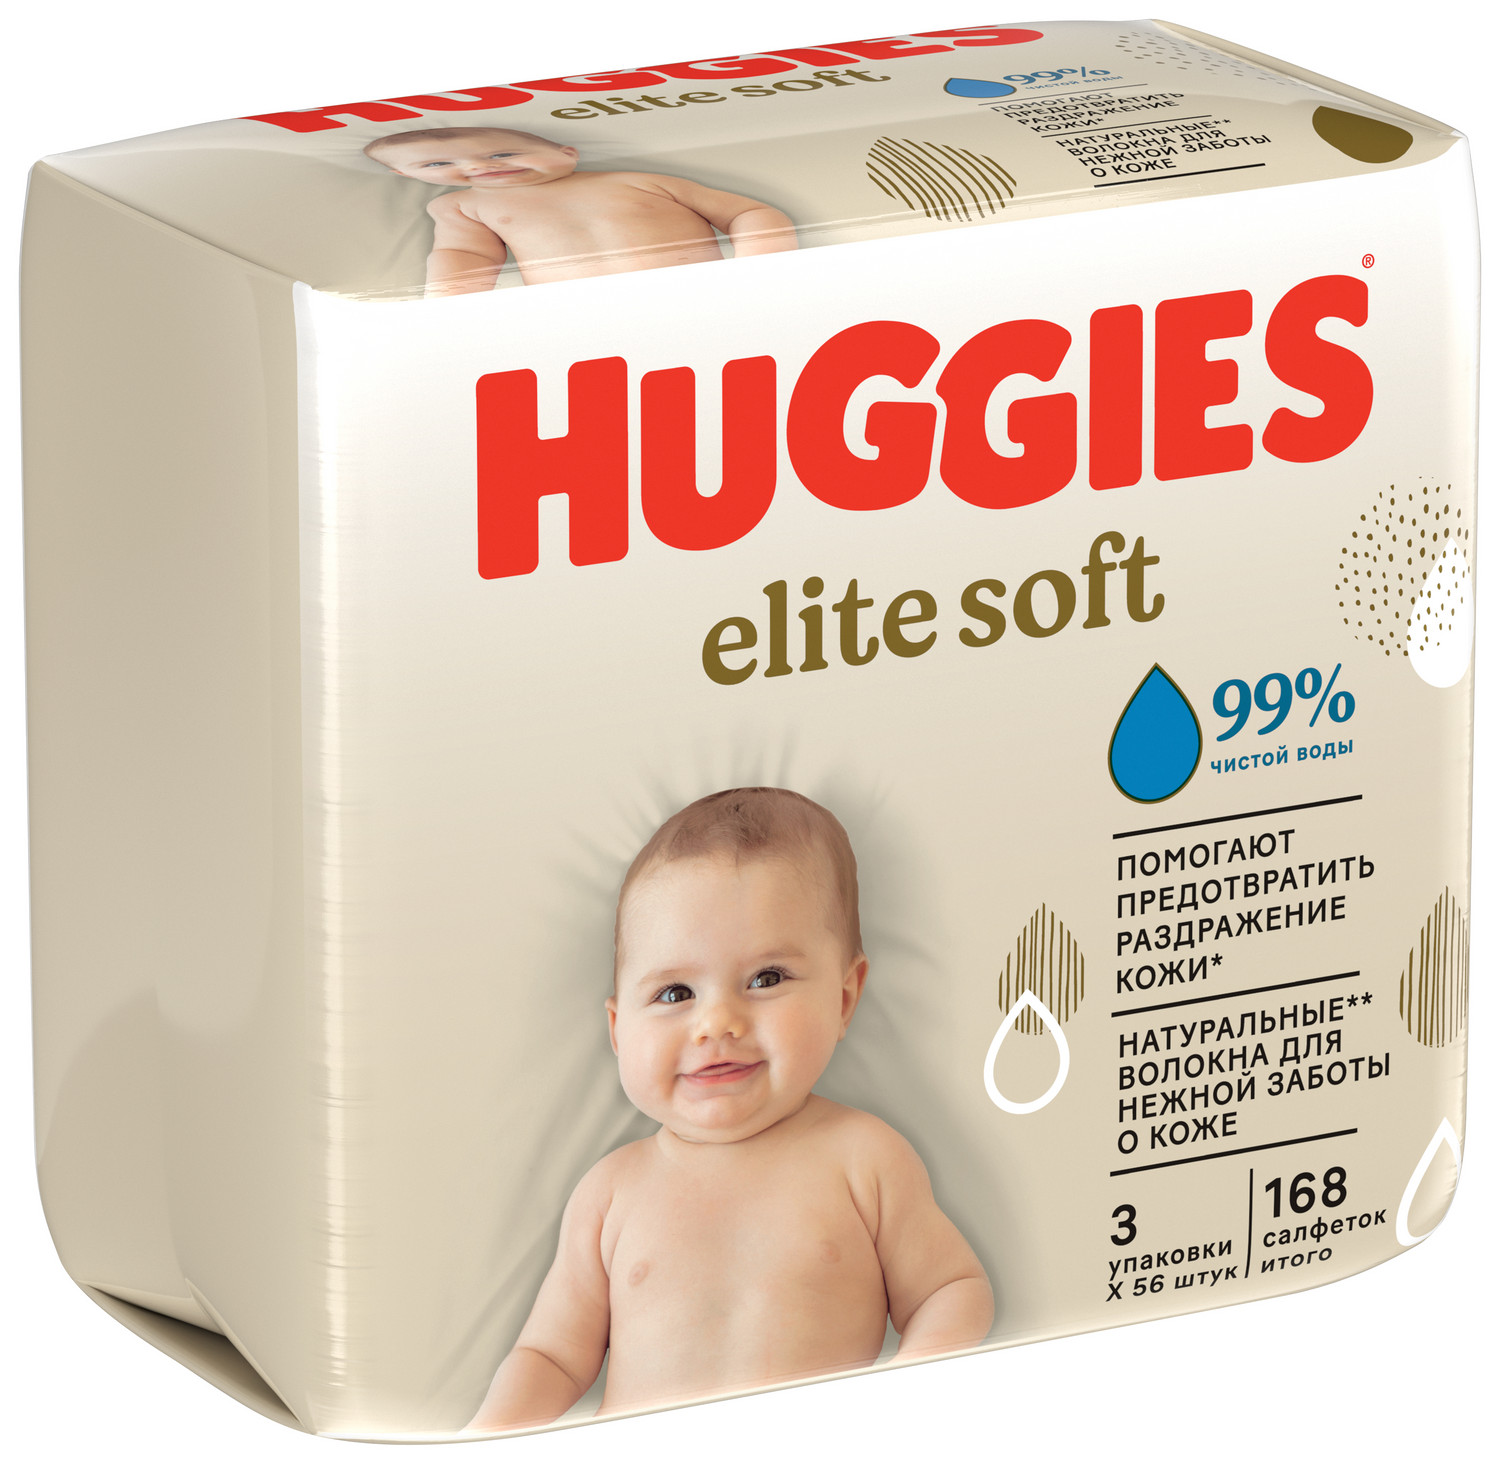 Купить Хаггис салфетки влажные для детей Элит Софт №168, KIMBERLY-CLARK